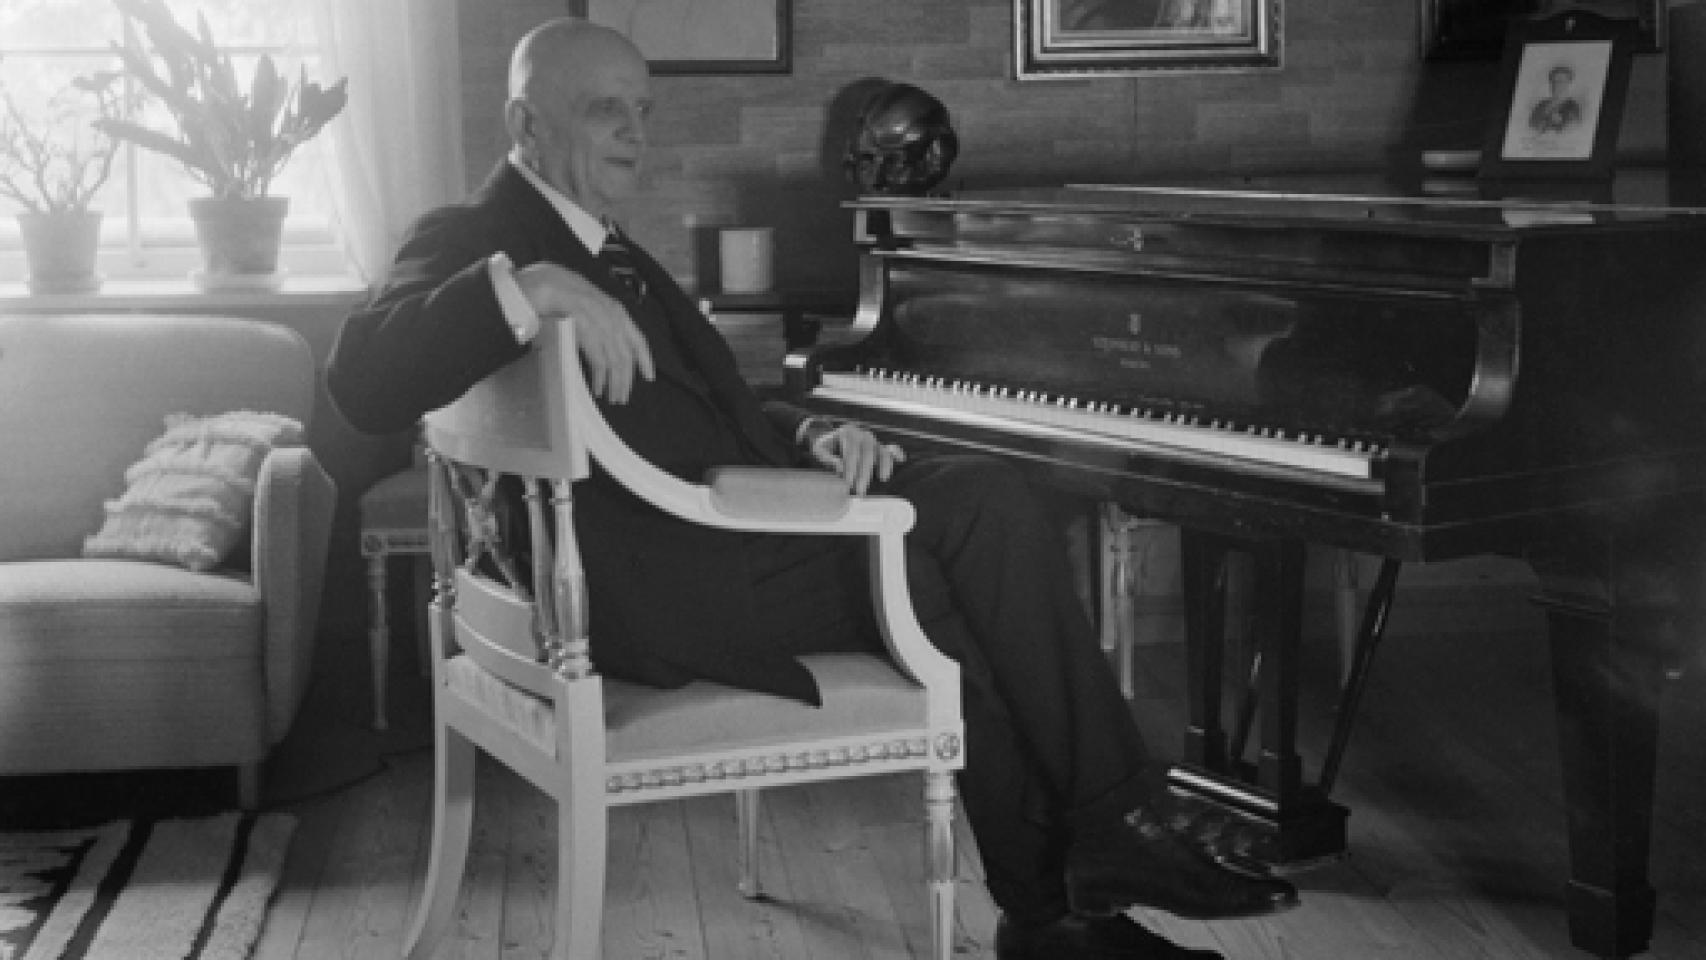 Image: Sibelius, solidez y maestría romántica